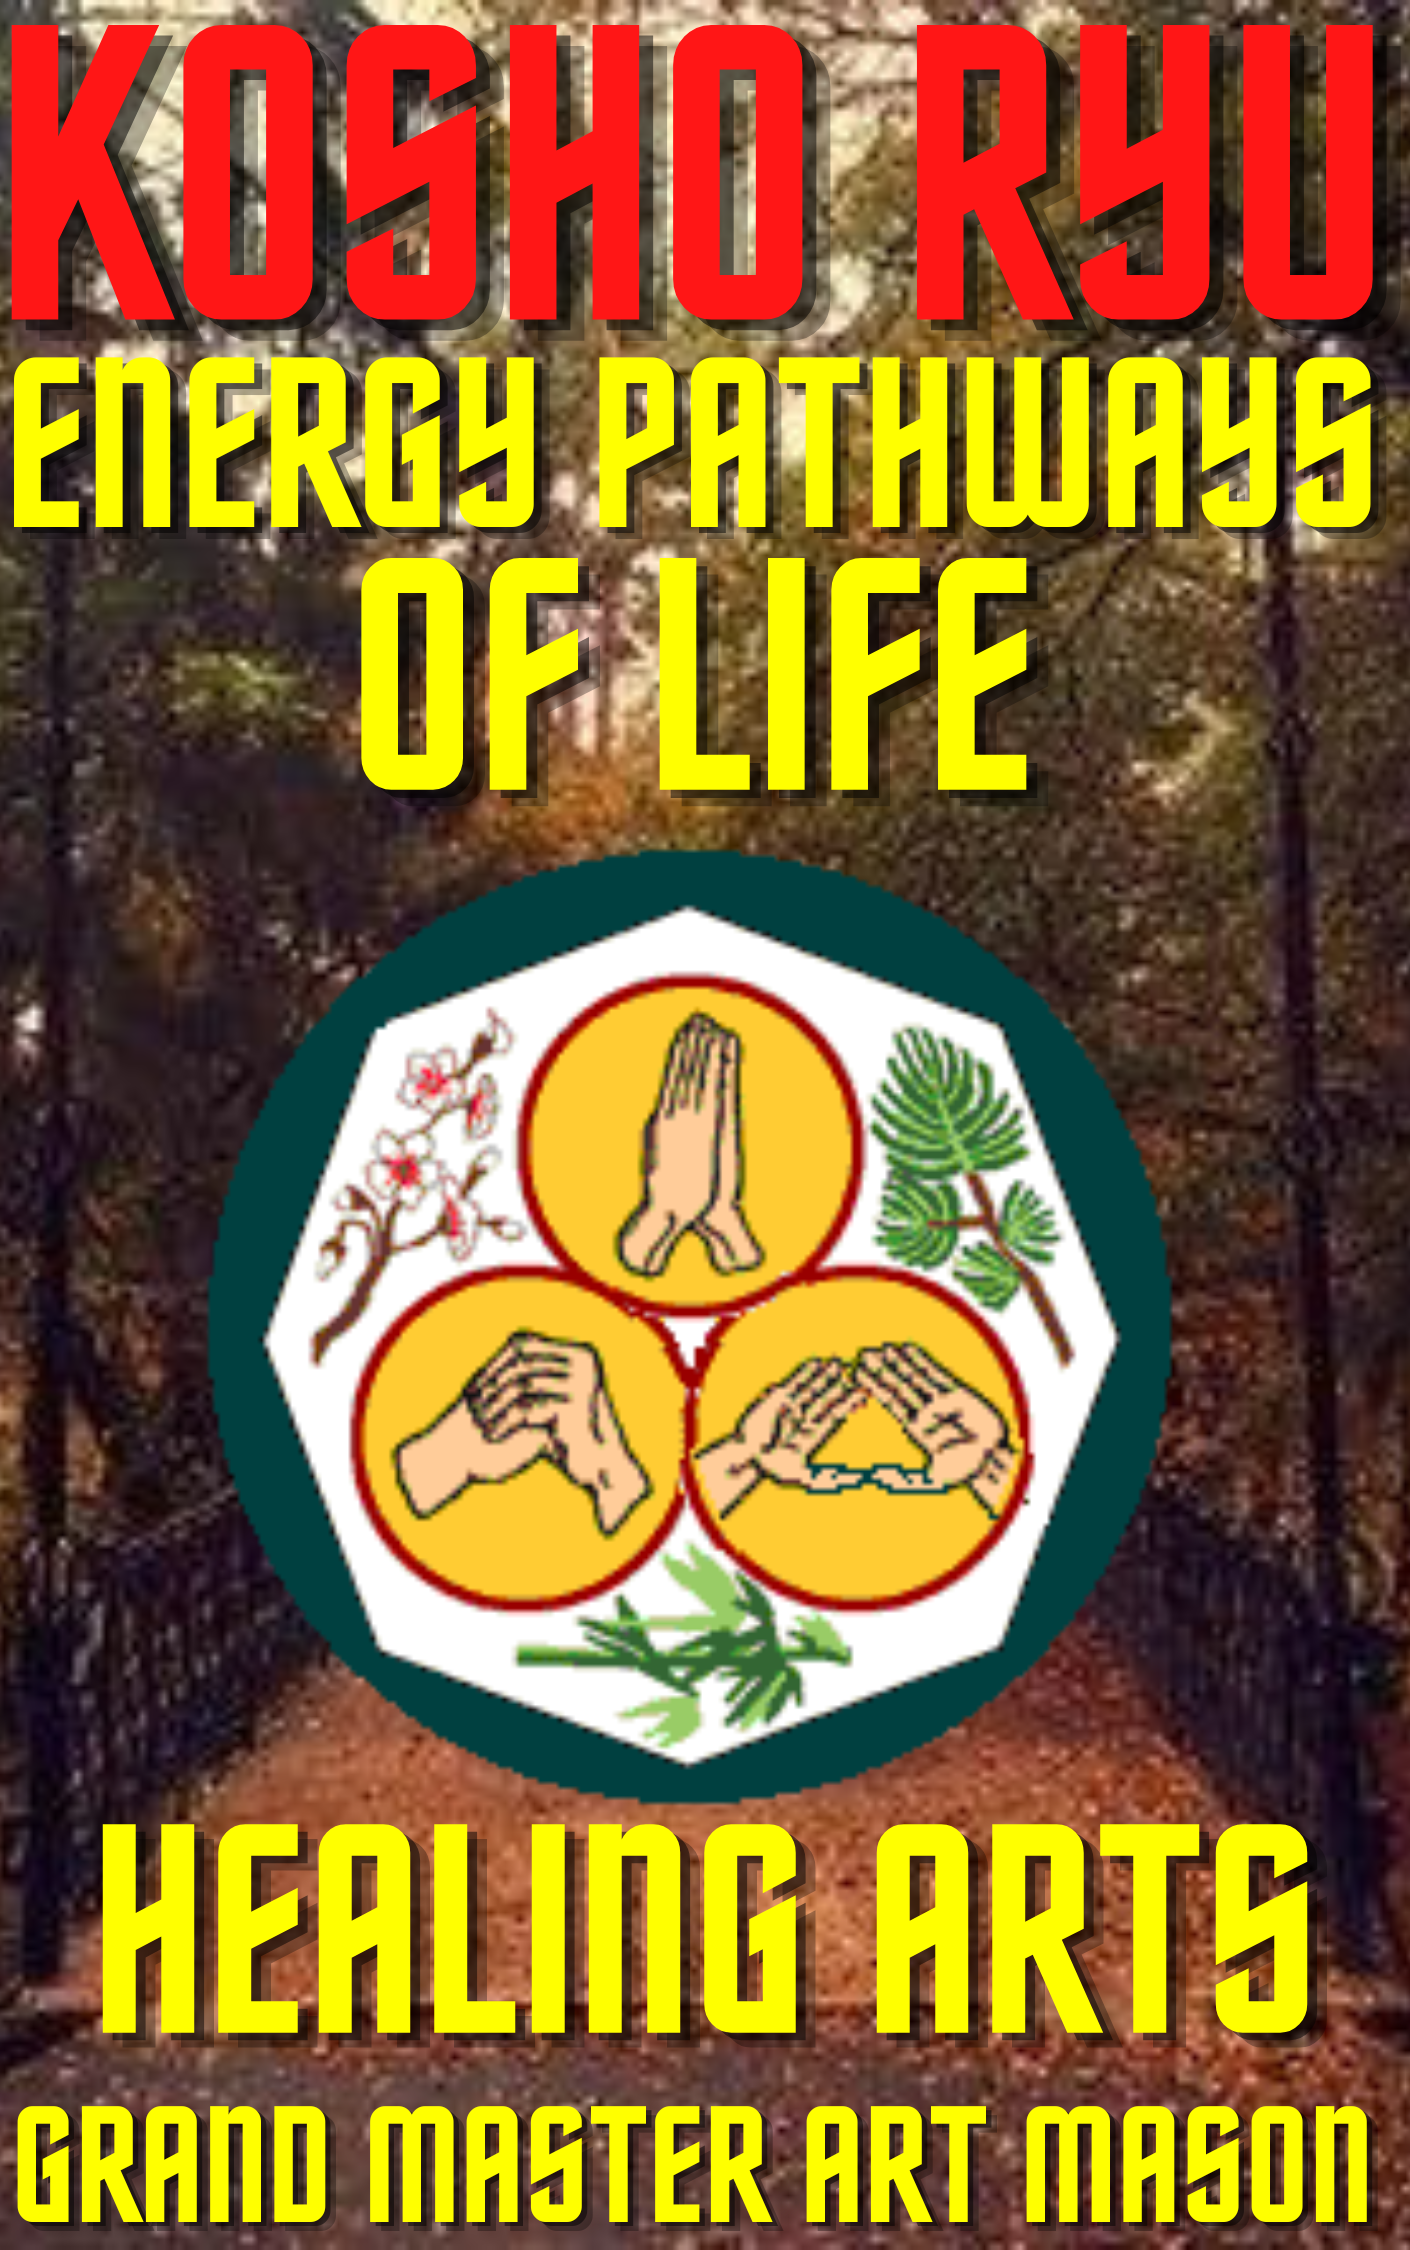 * Energy Pathways of Life